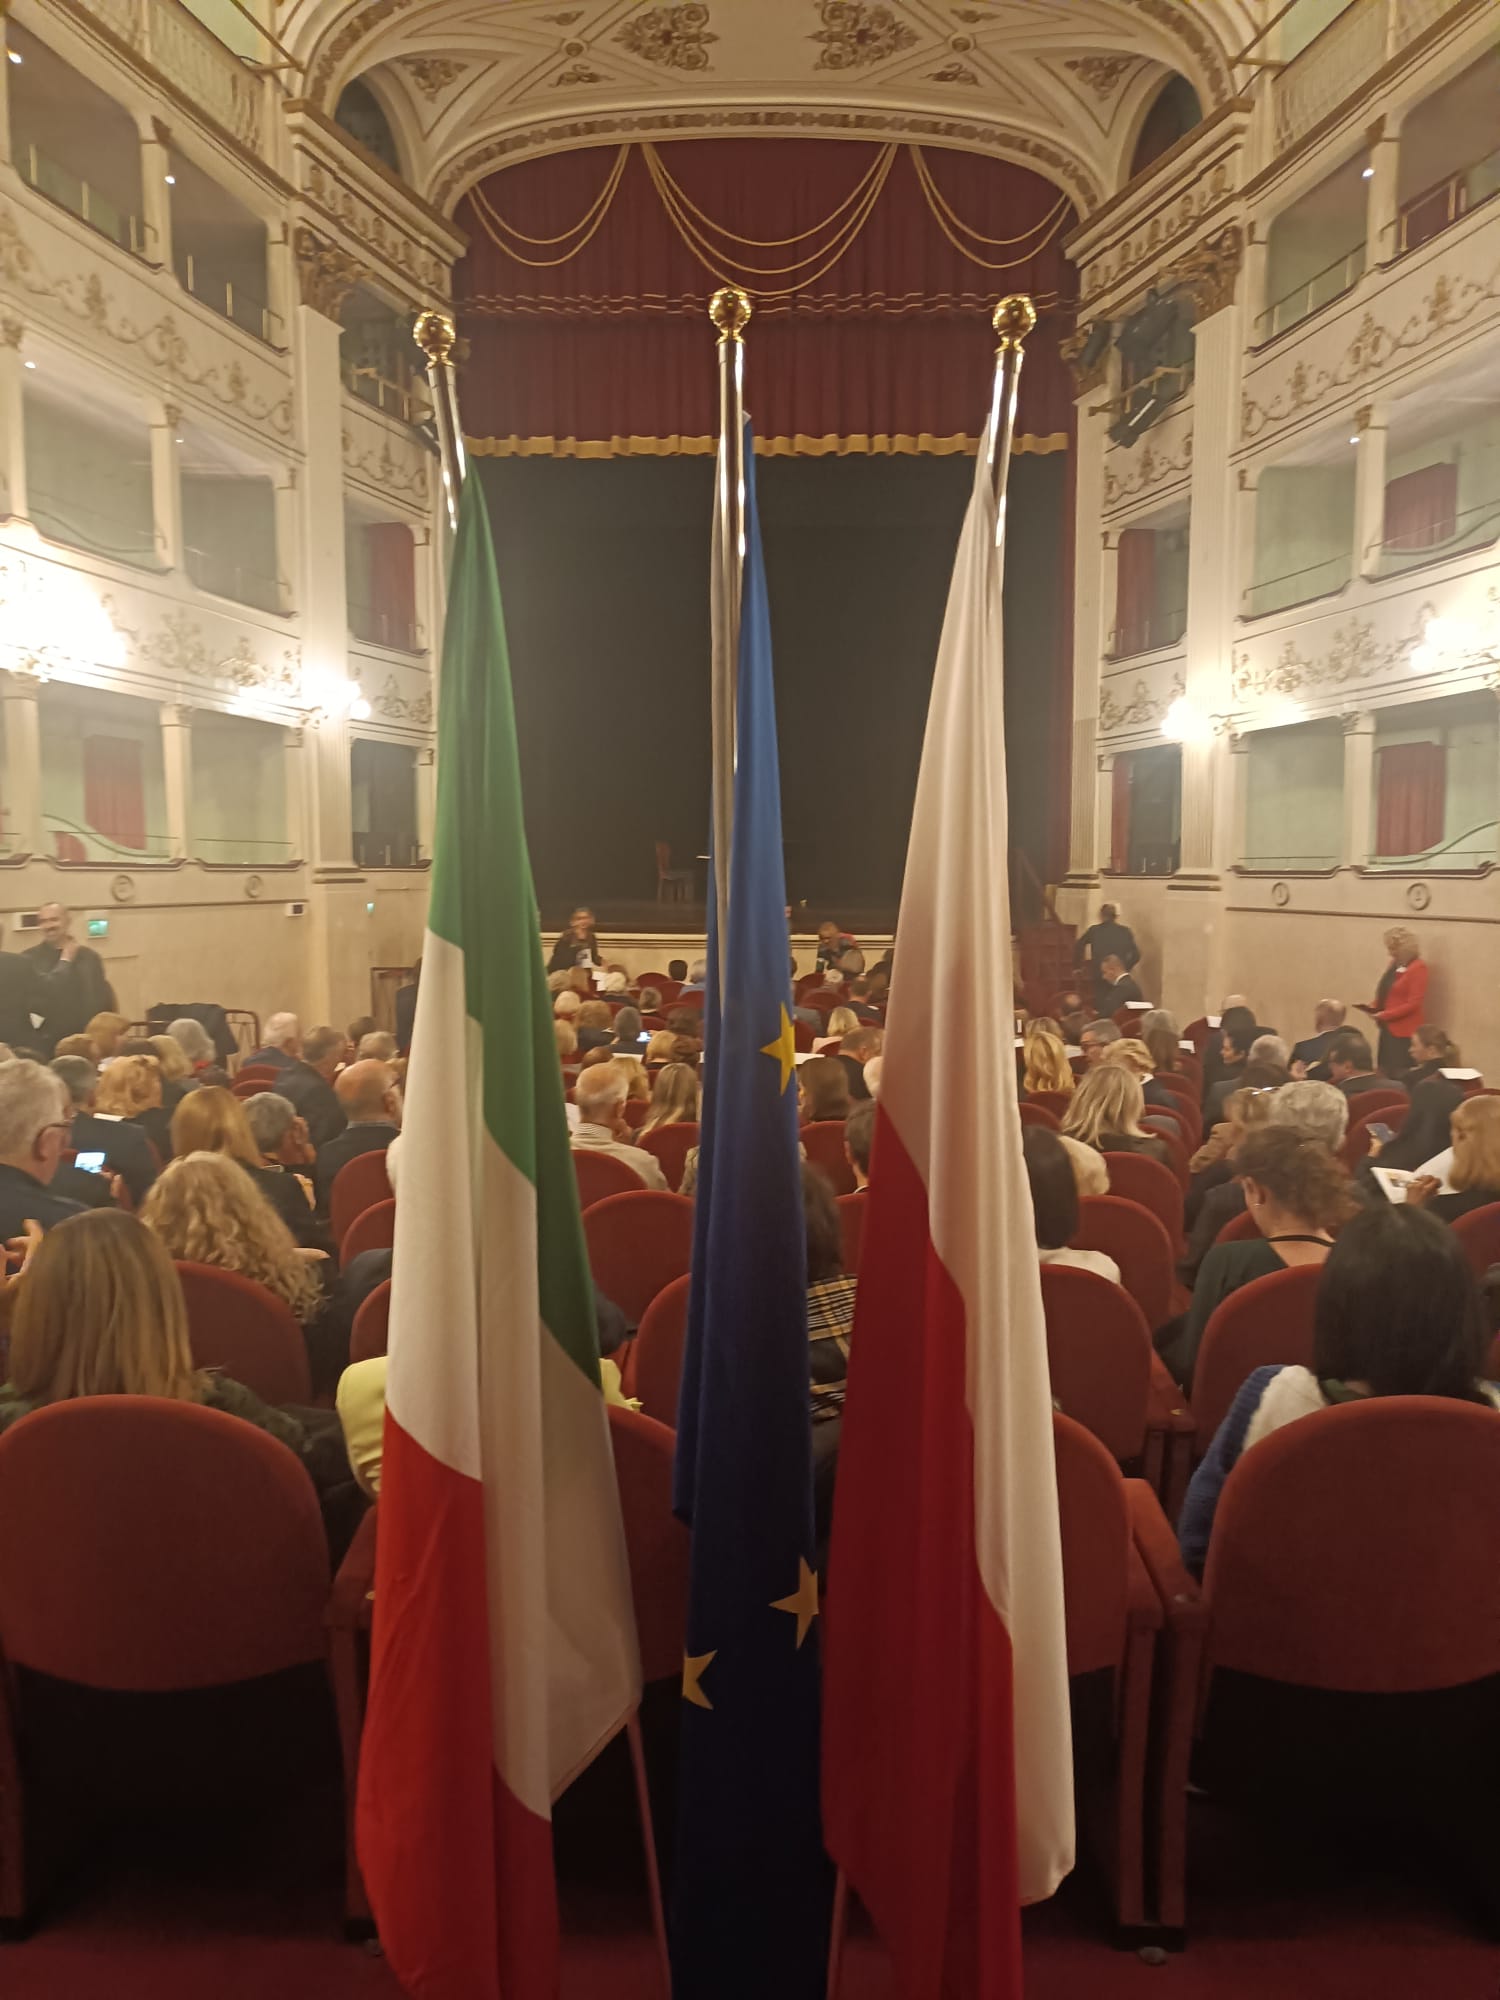 La Festa dell’Indipendenza polacca al Teatro Niccolini di Firenze